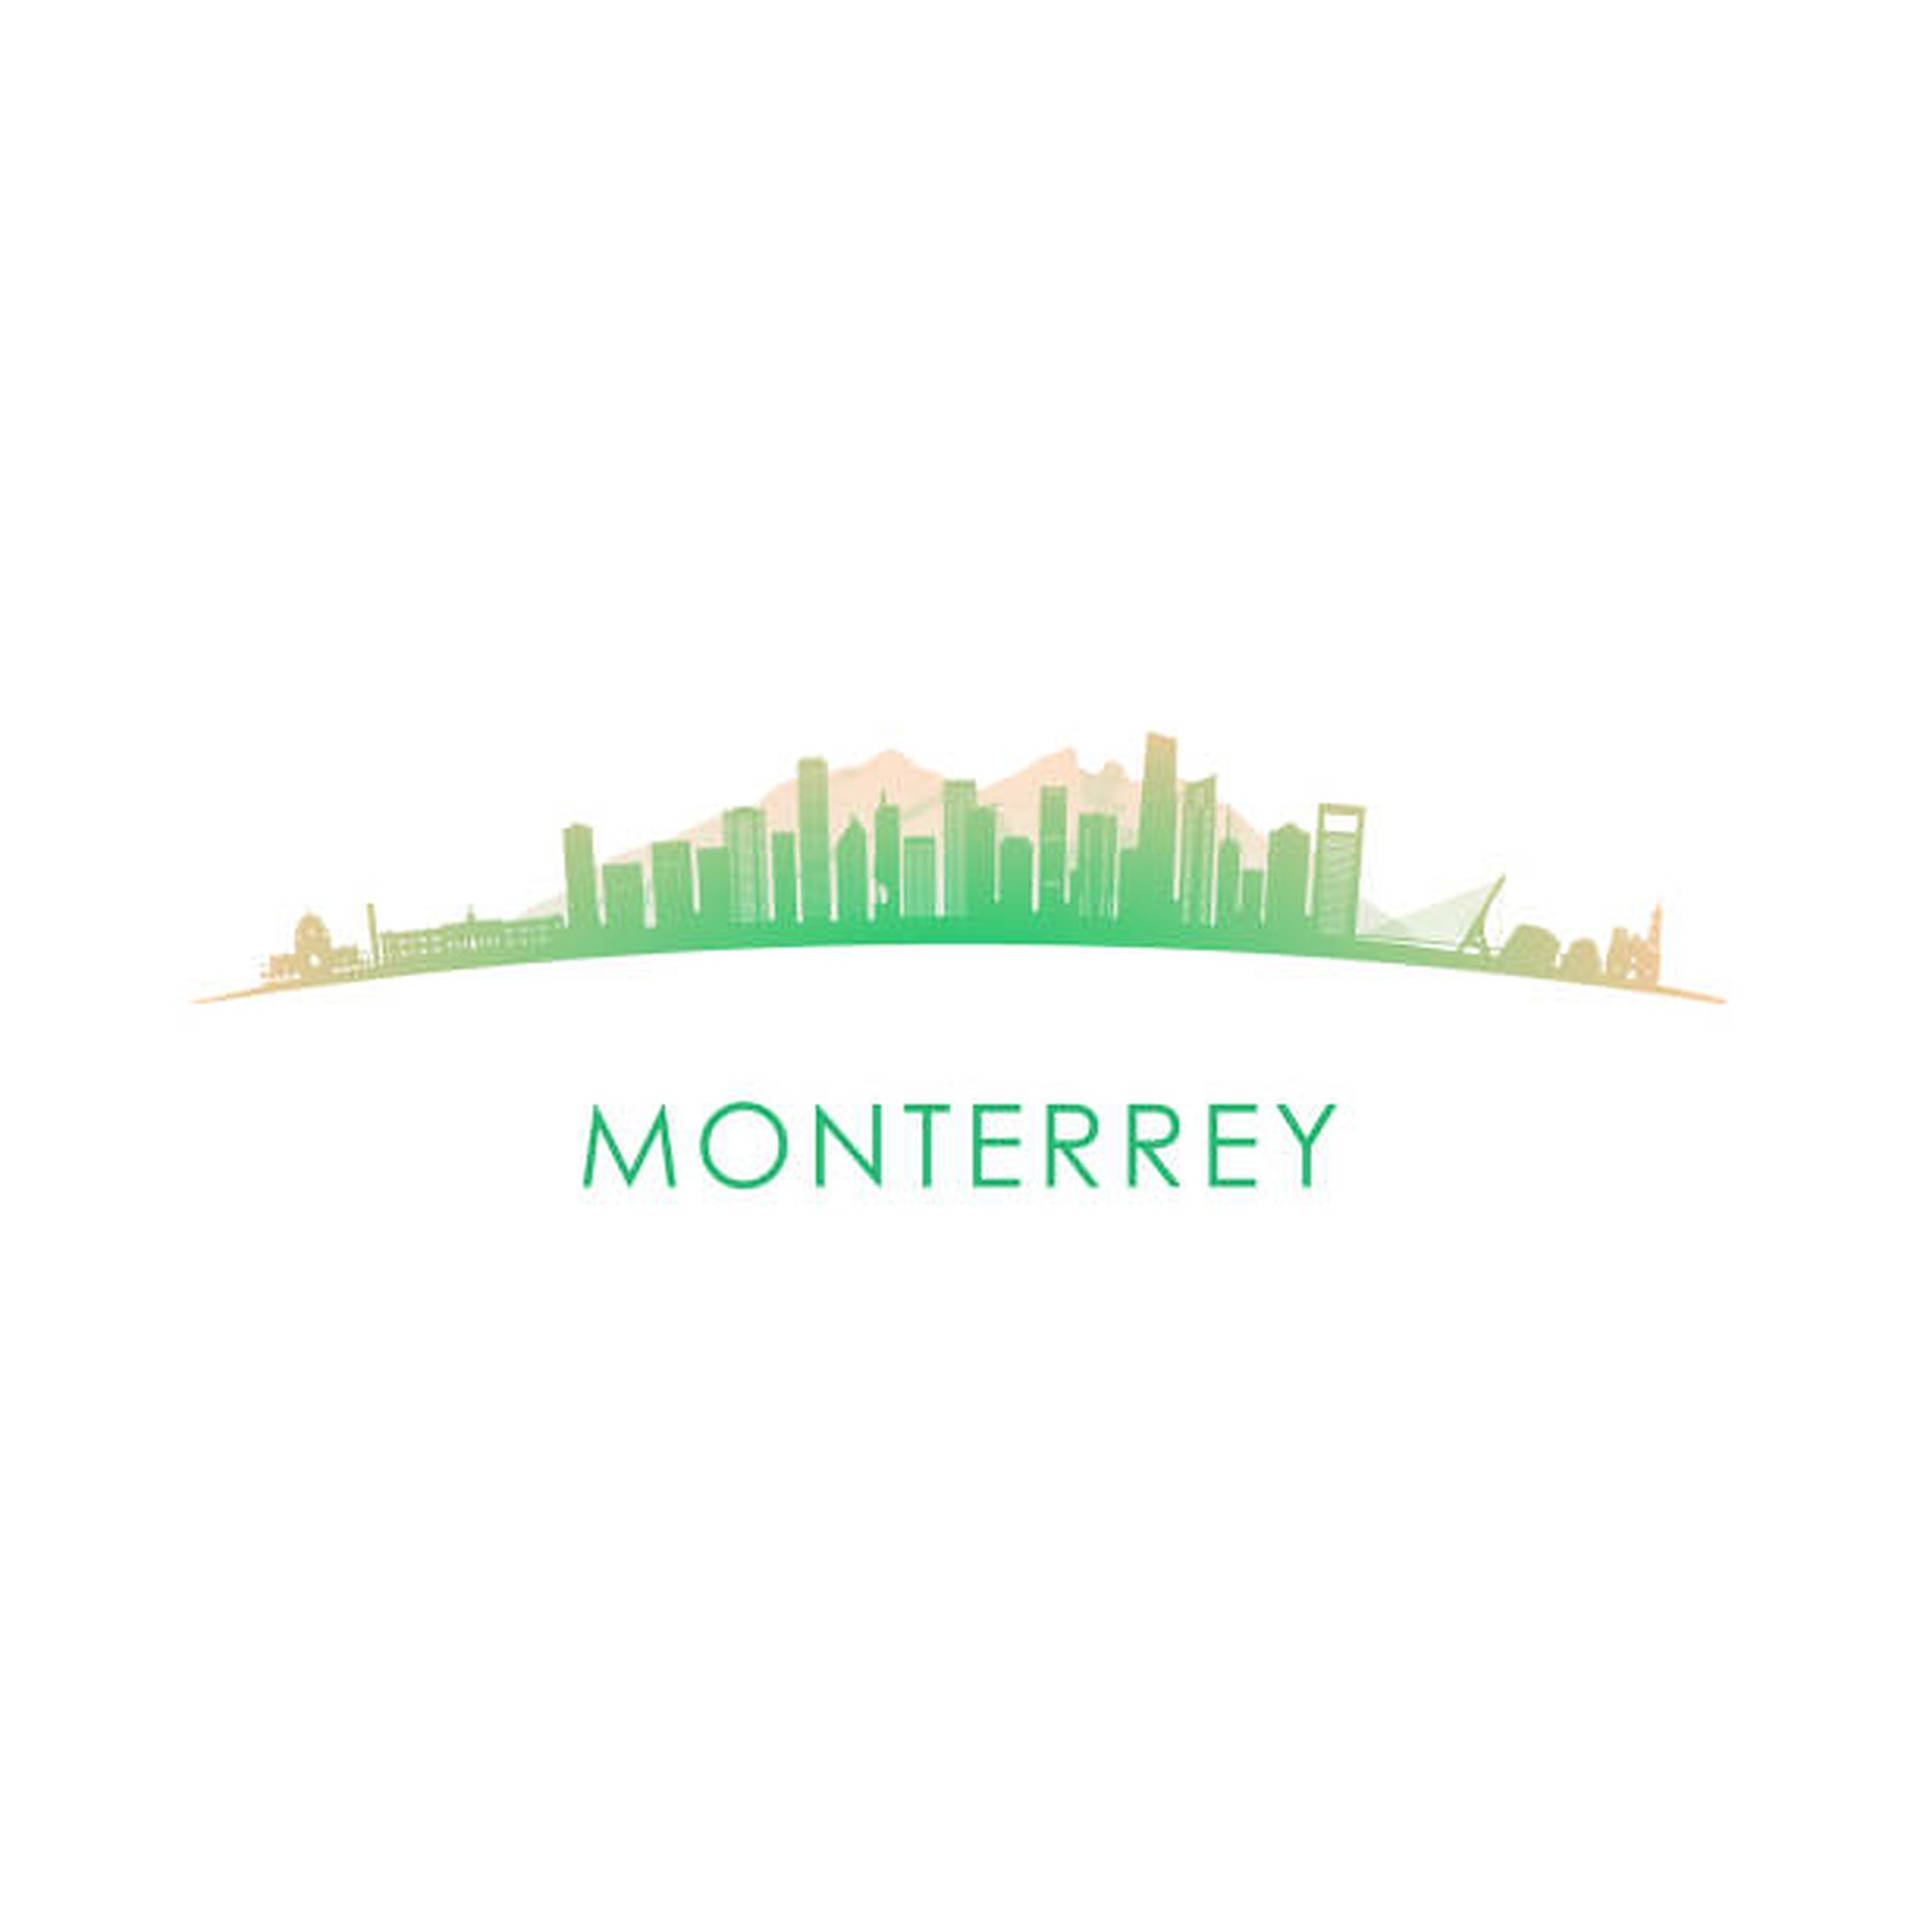 Monterrey Digital Artwork